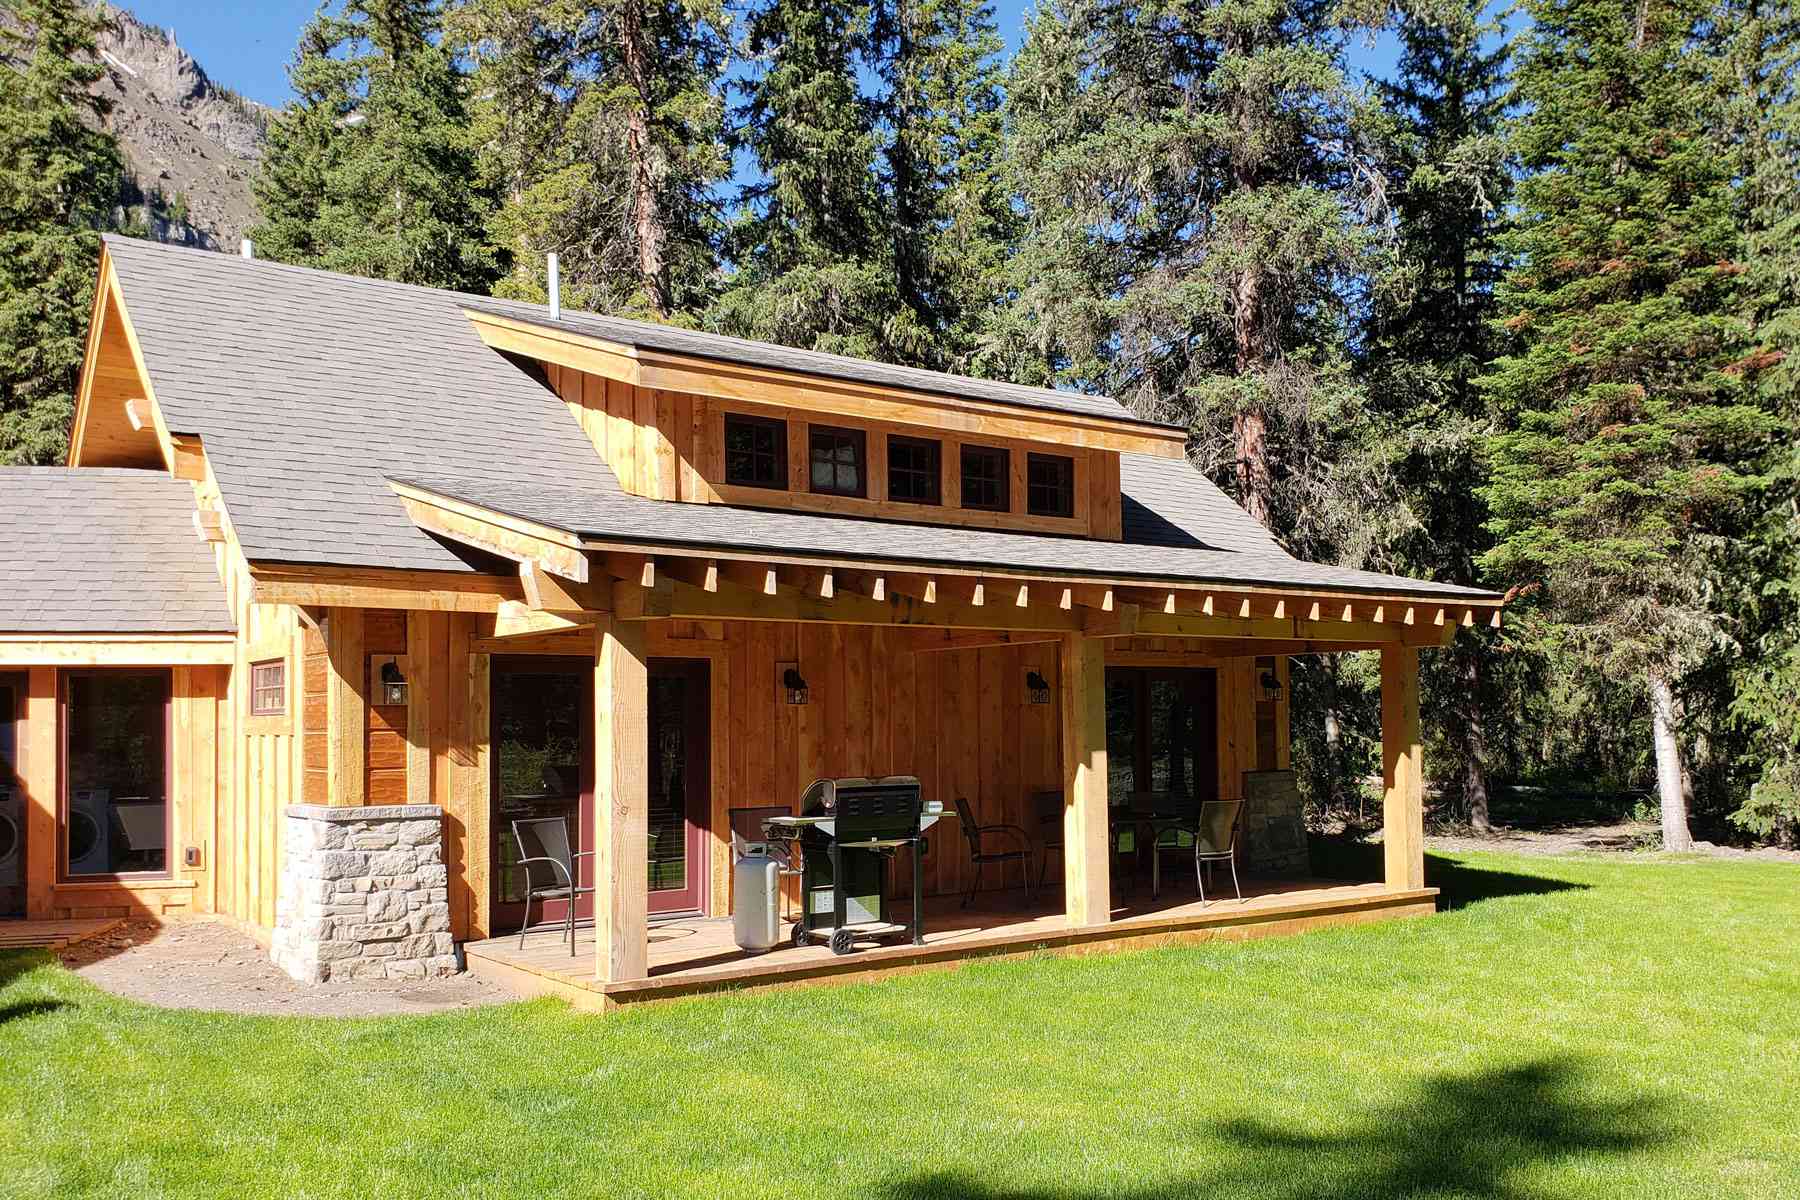 Extérieur de maison de style cabane en bois